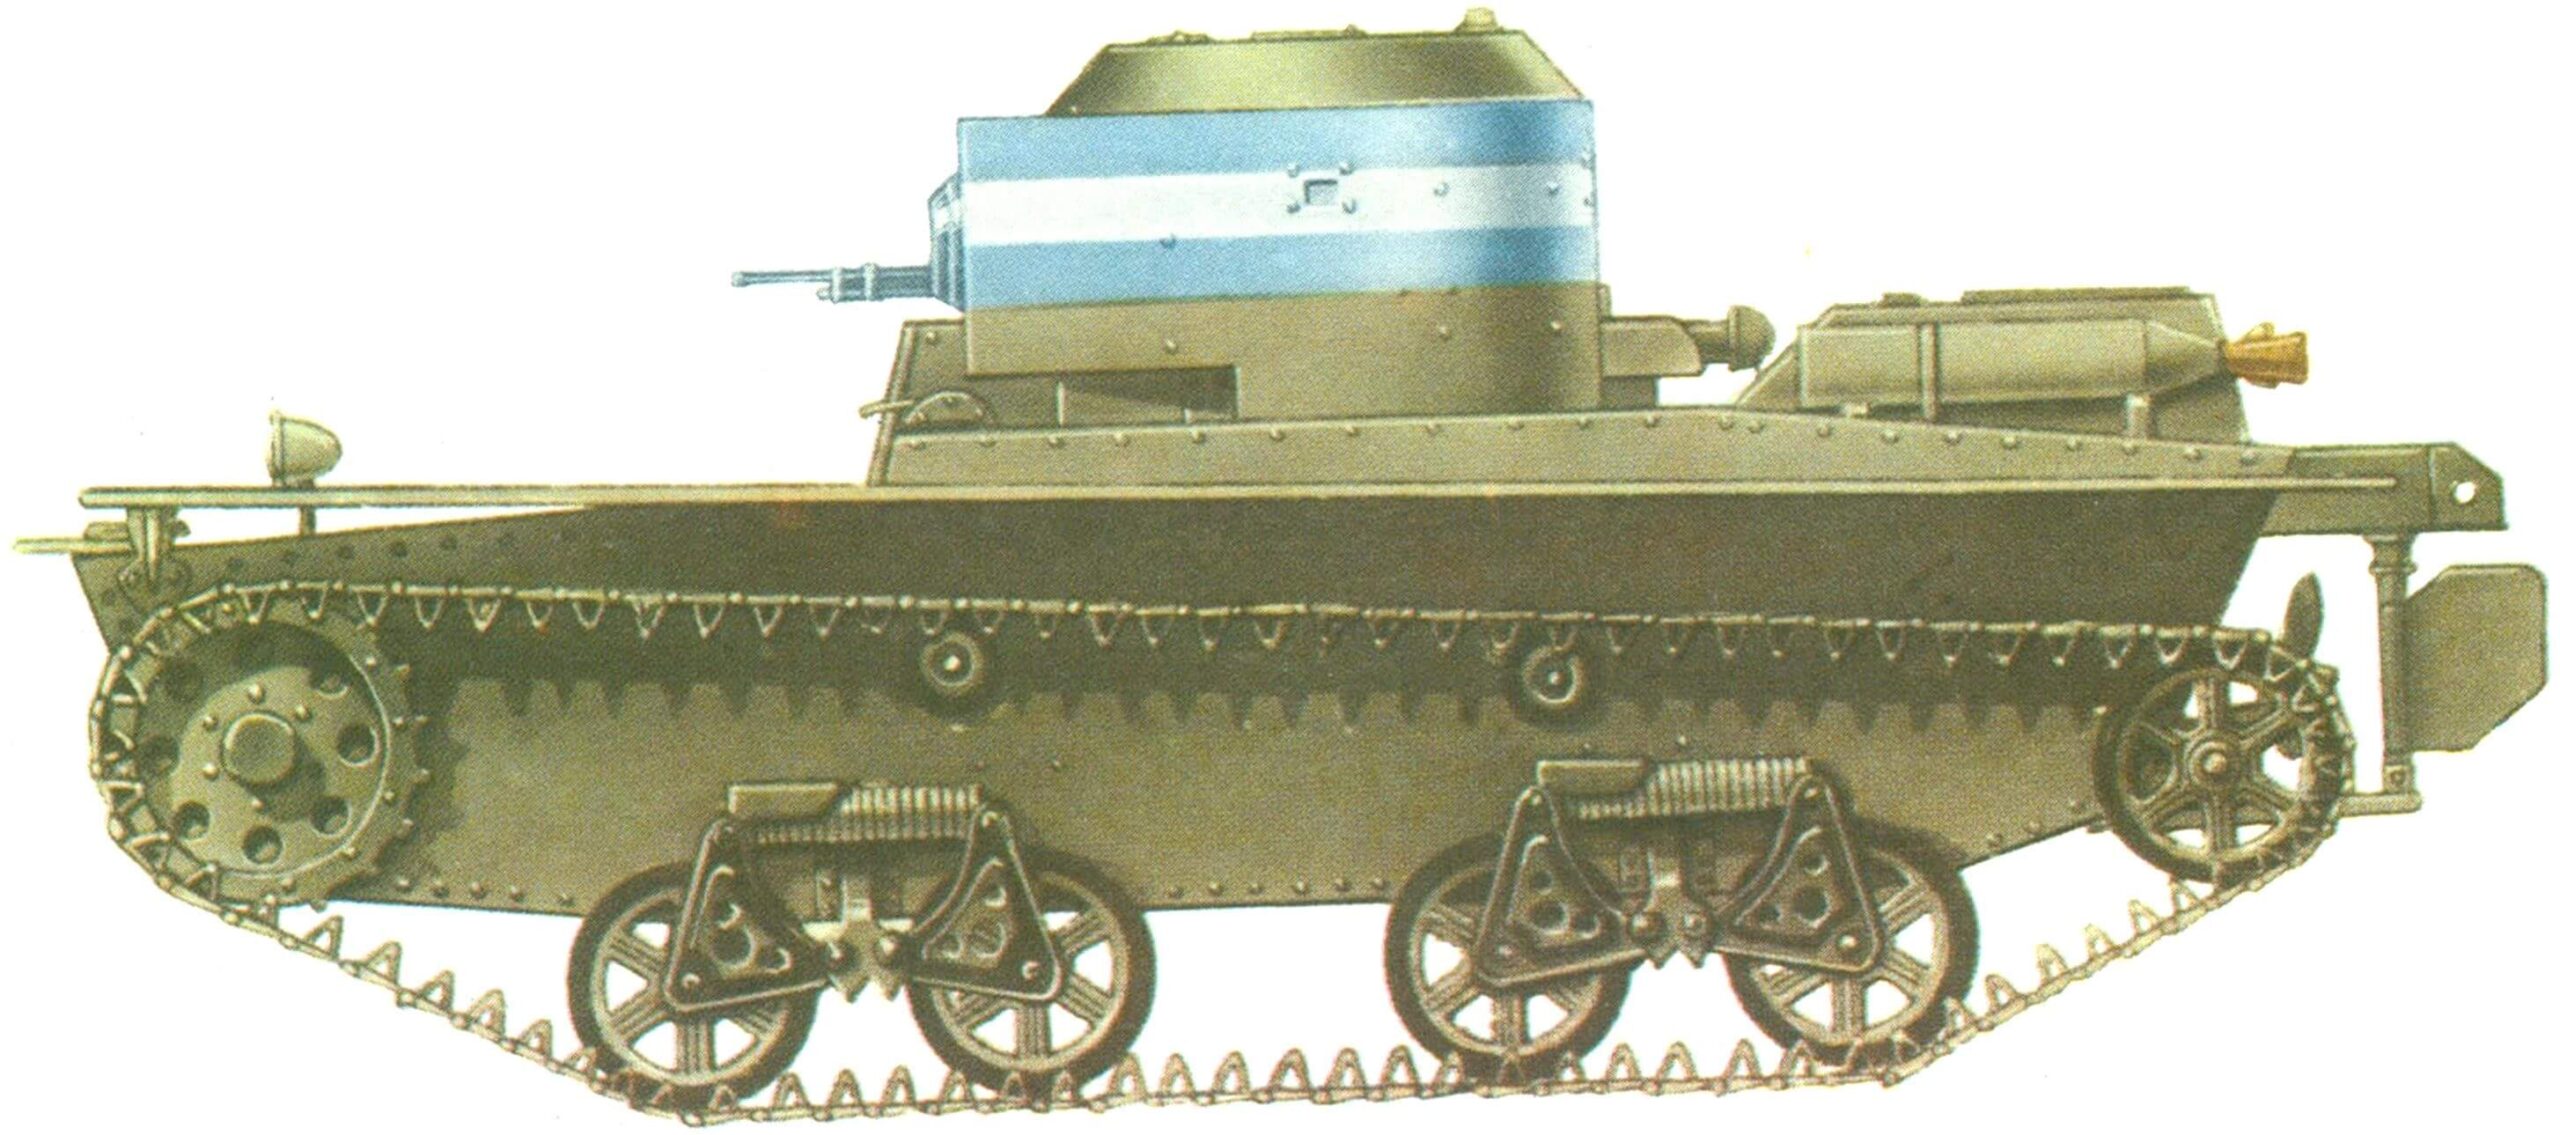 ТАНК Т-38 в типовой окраске, характерной для финских танковых частей. 1940 г.